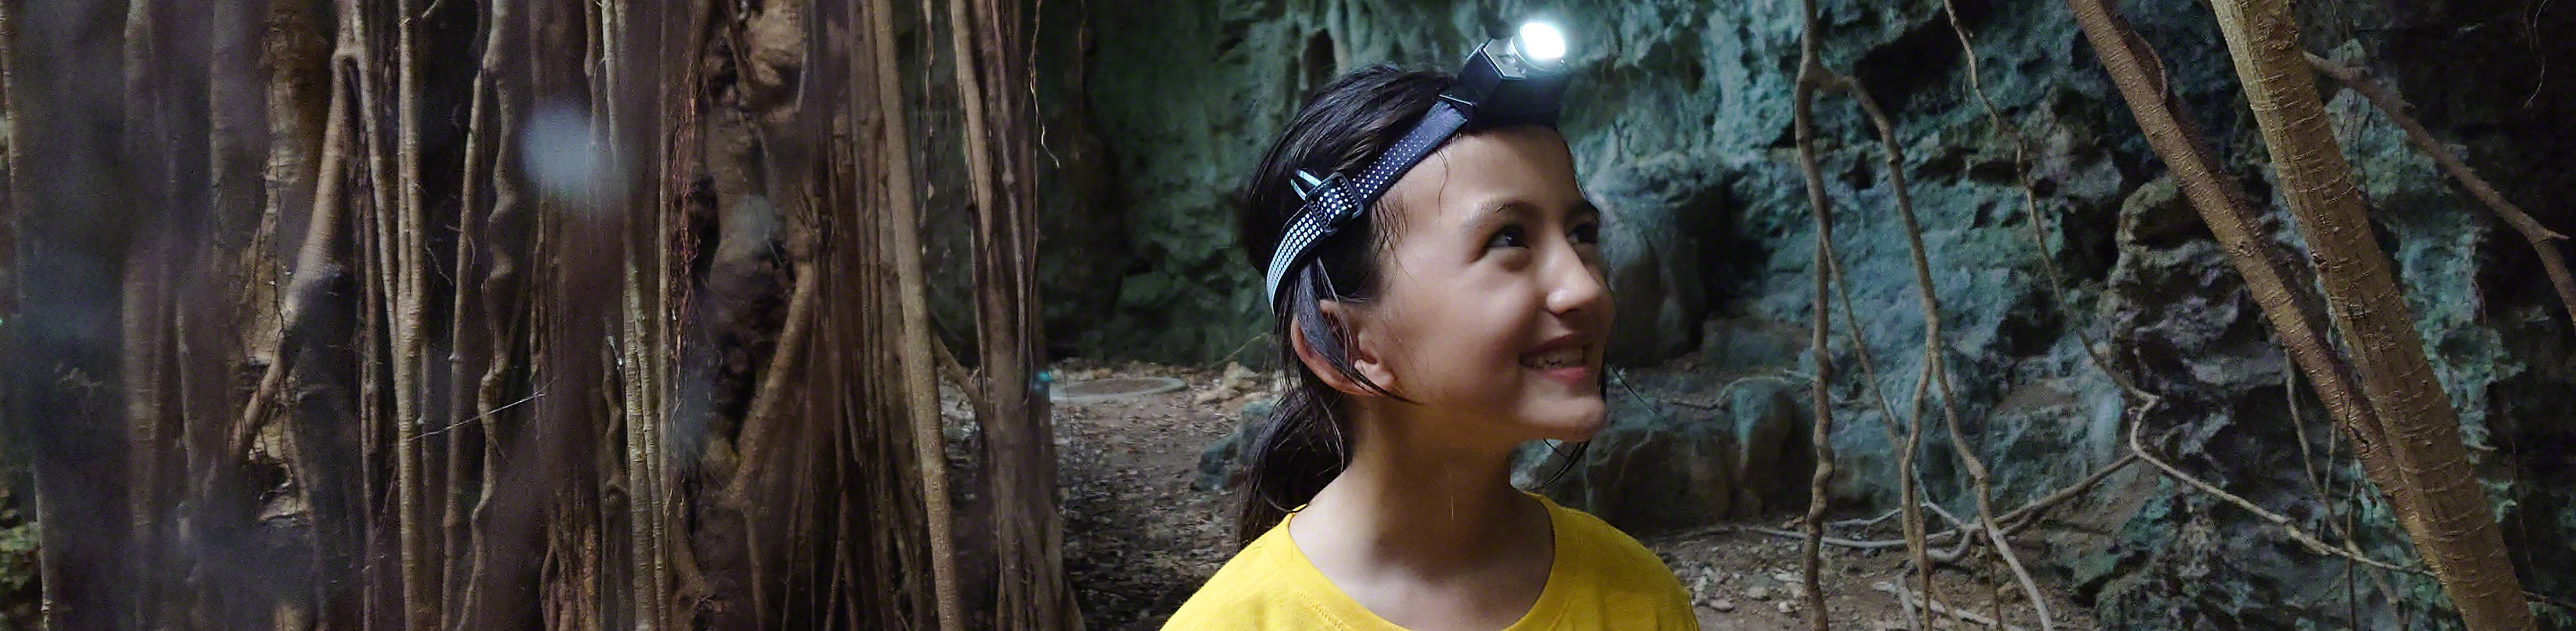 Mädchen in einem gelben T-Shirt mit einer Kopflampe, das zwischen Bäumen und einer Felswand entlangläuft